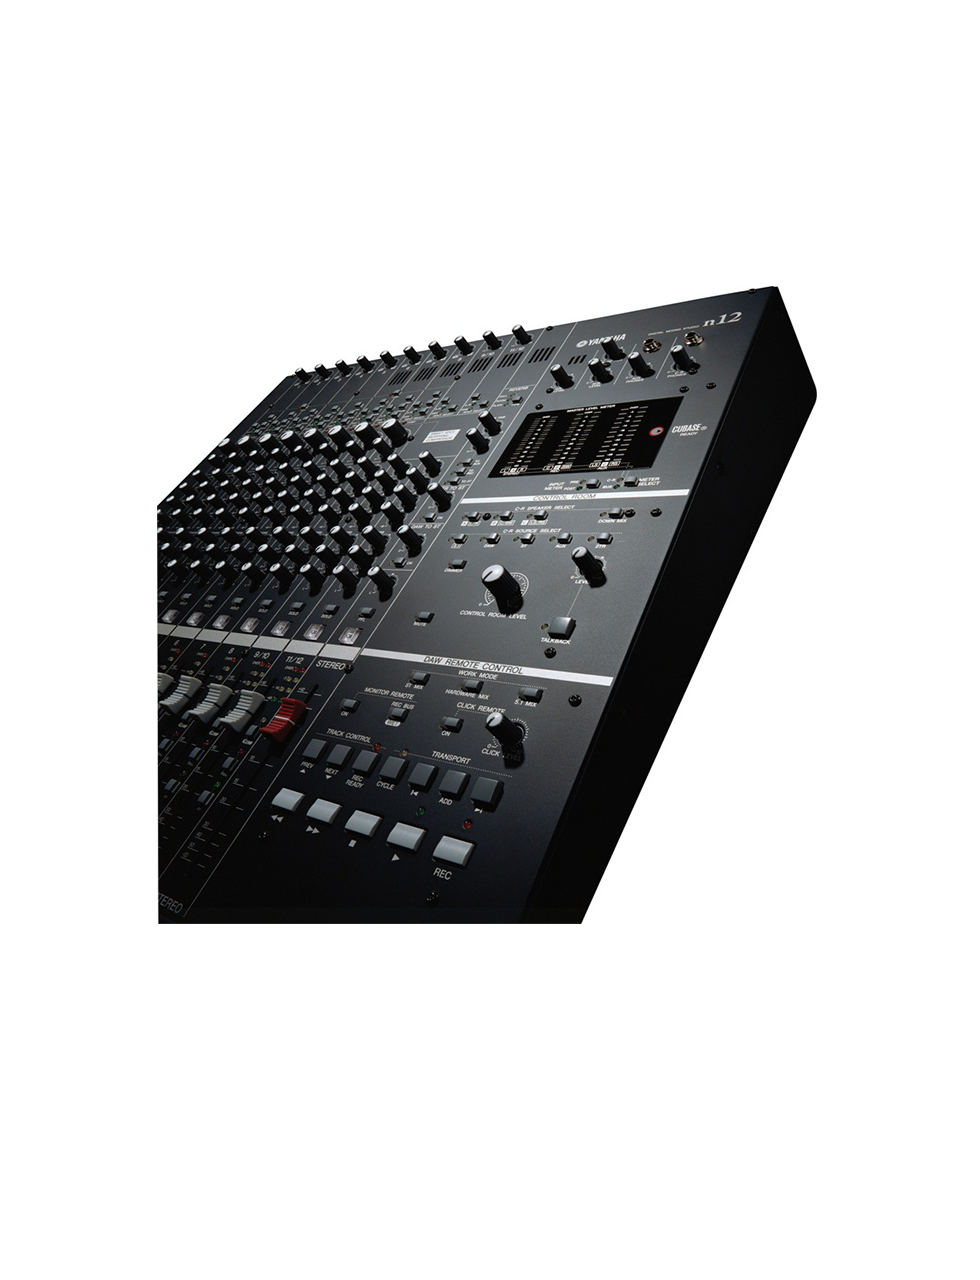 Yamaha-N12-Digital-Mixer-5.png